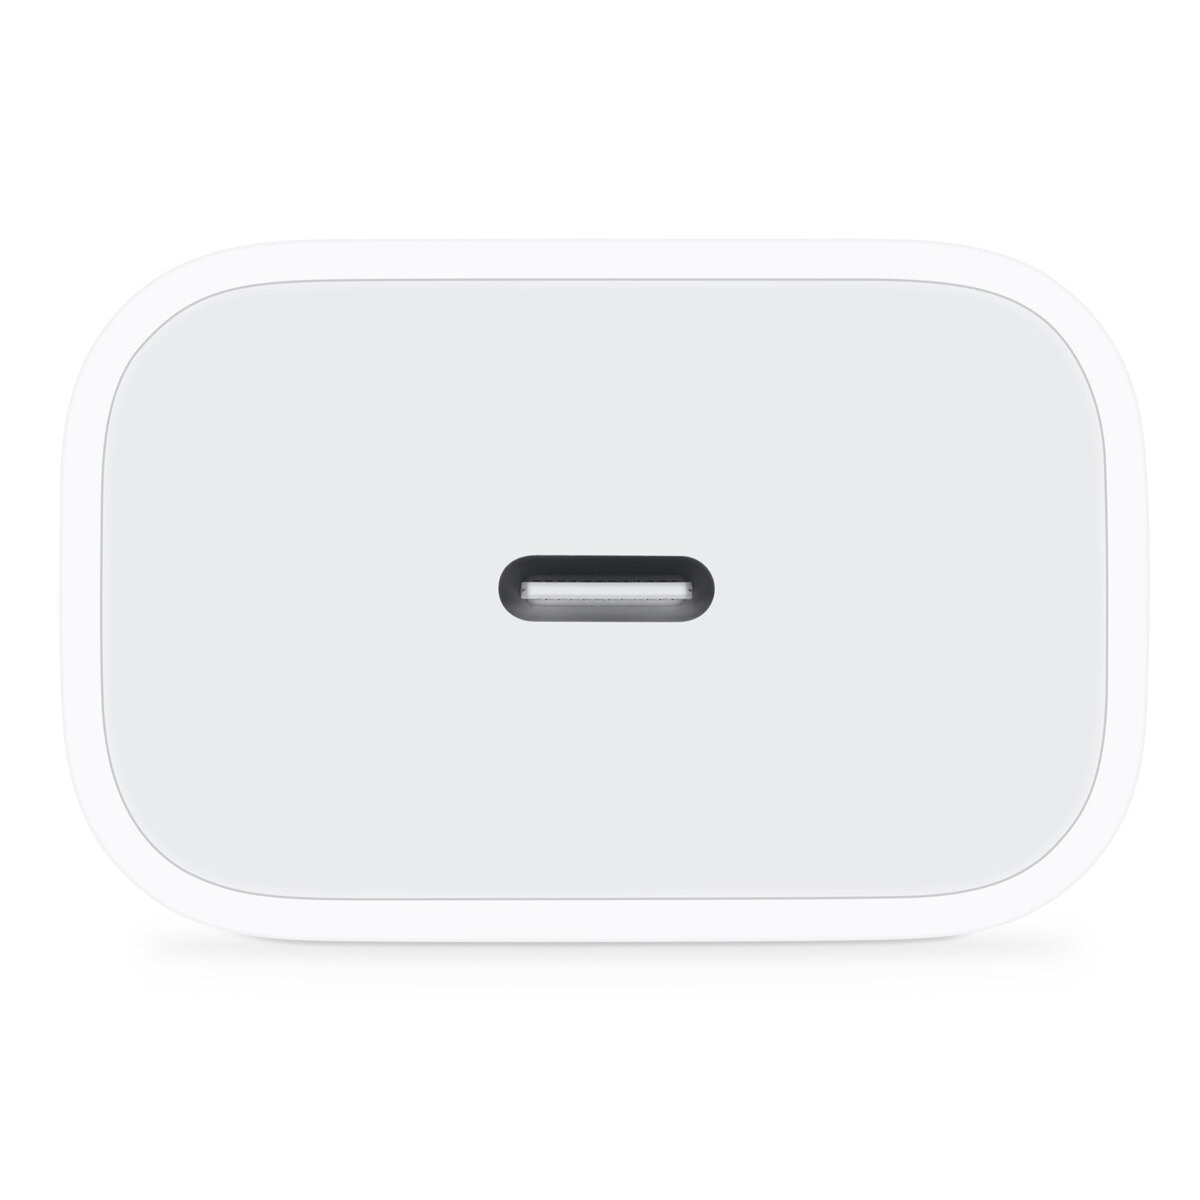 Apple純正品 MagSafe充電器 TYPE C 電源アダプタ(20W) - 3